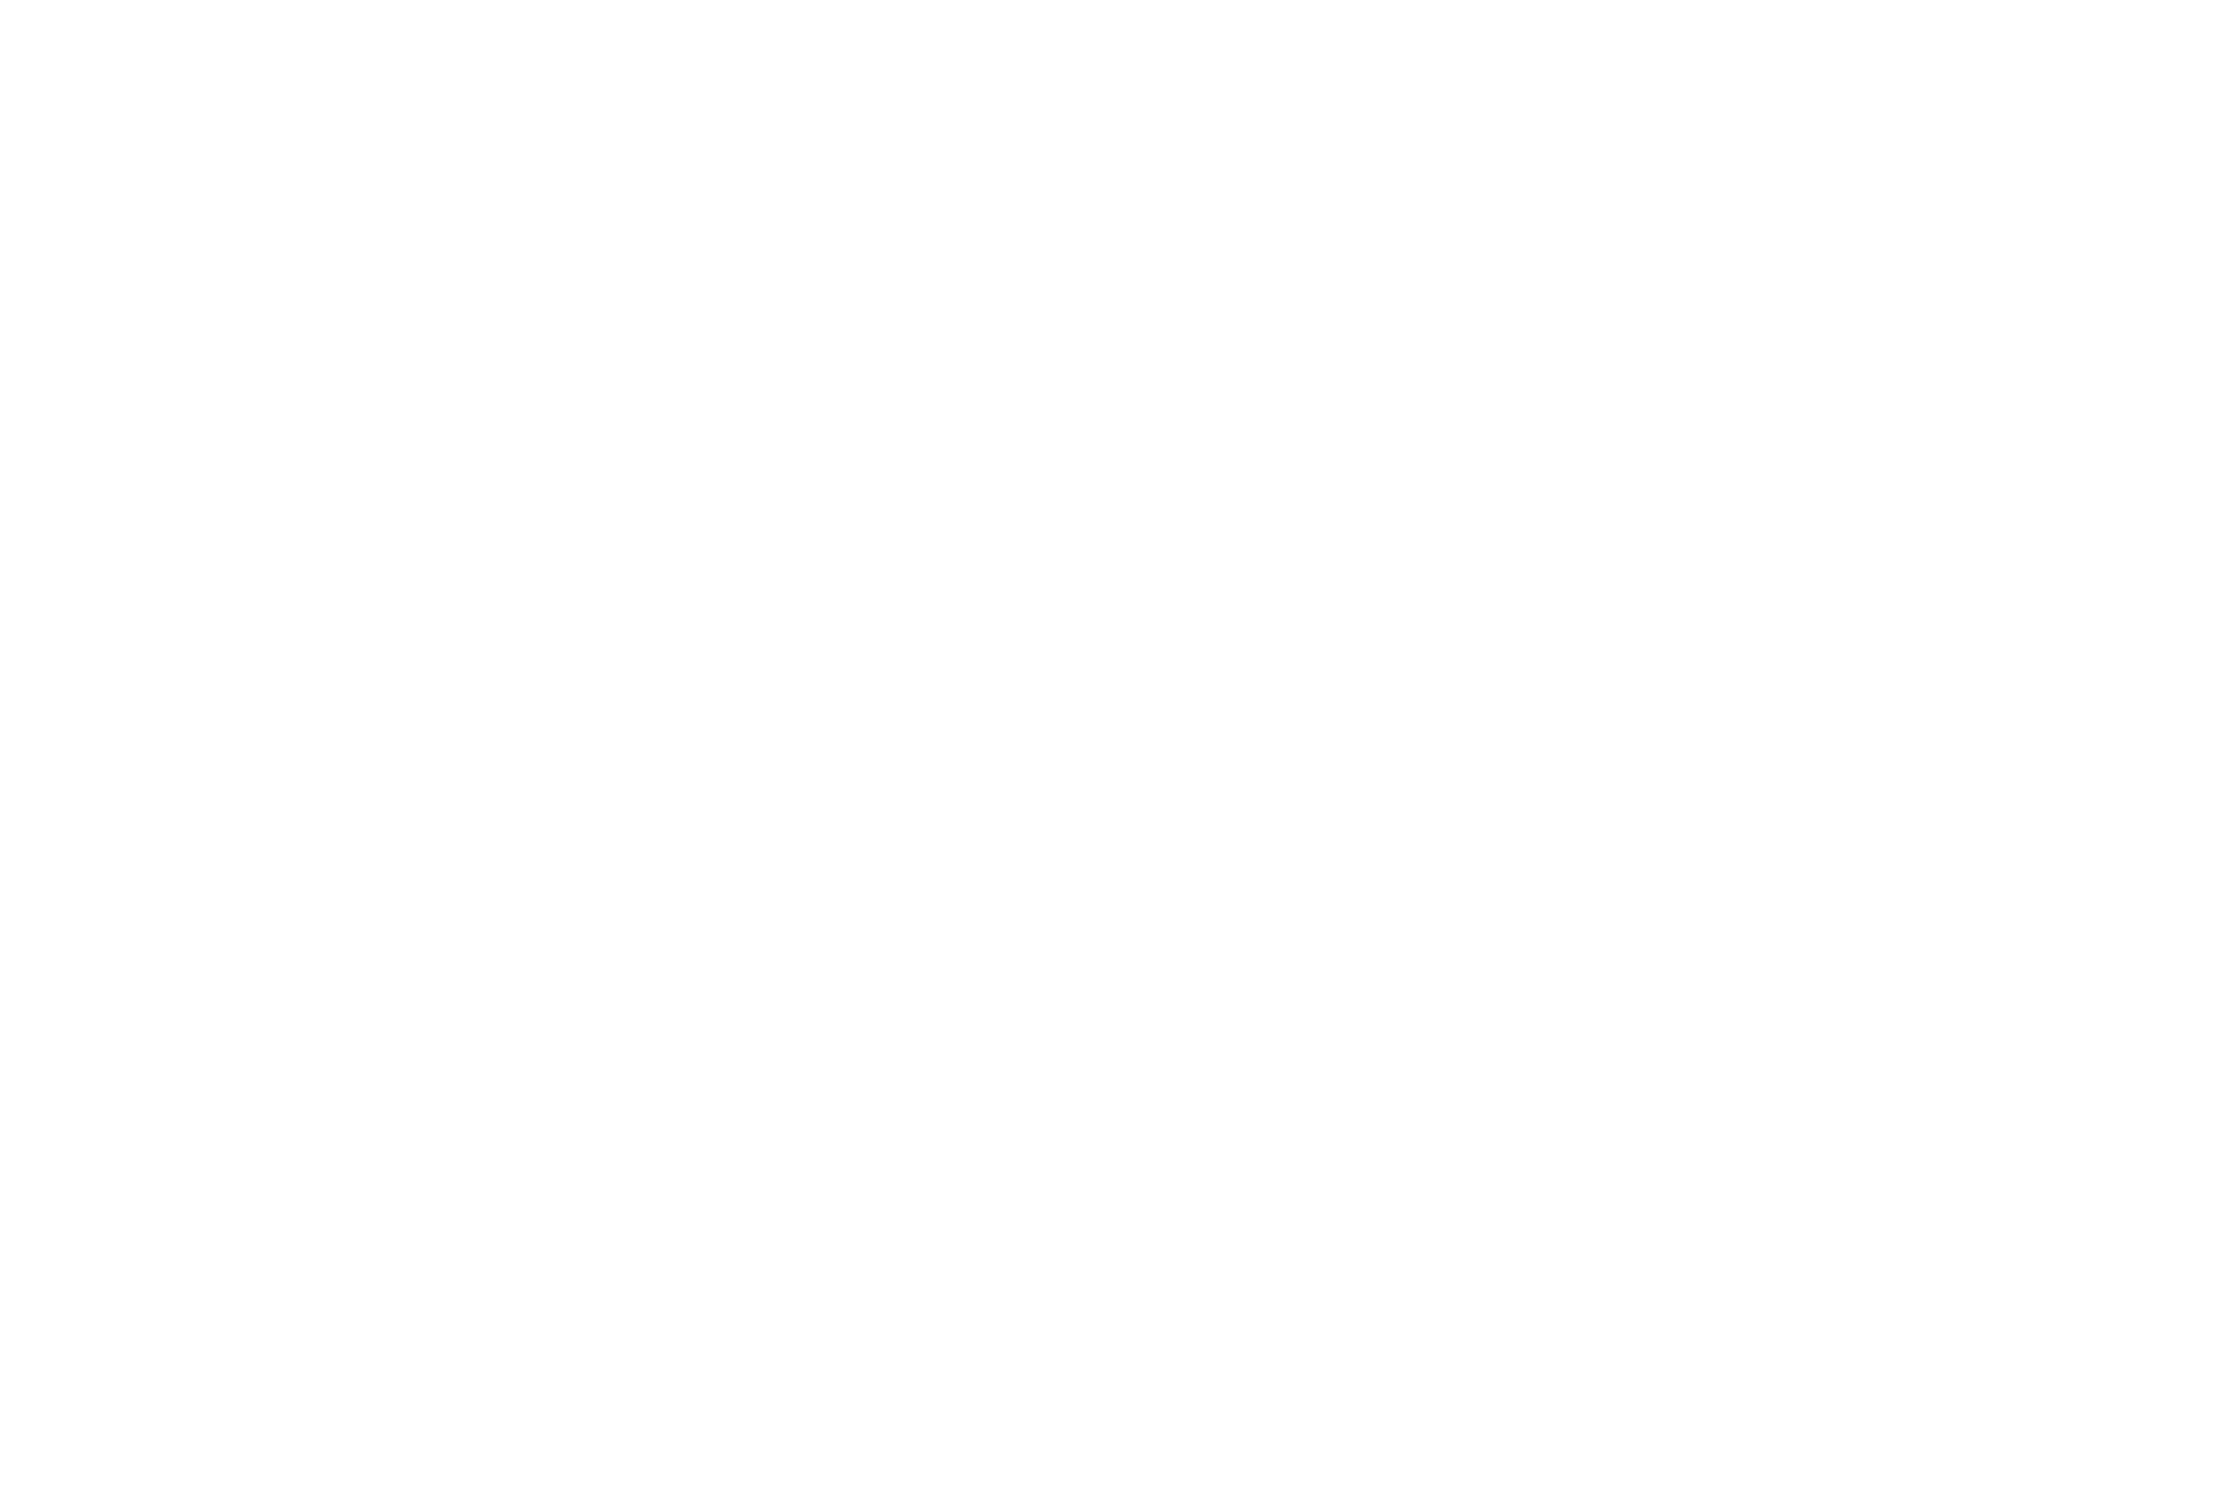 Capri Partners